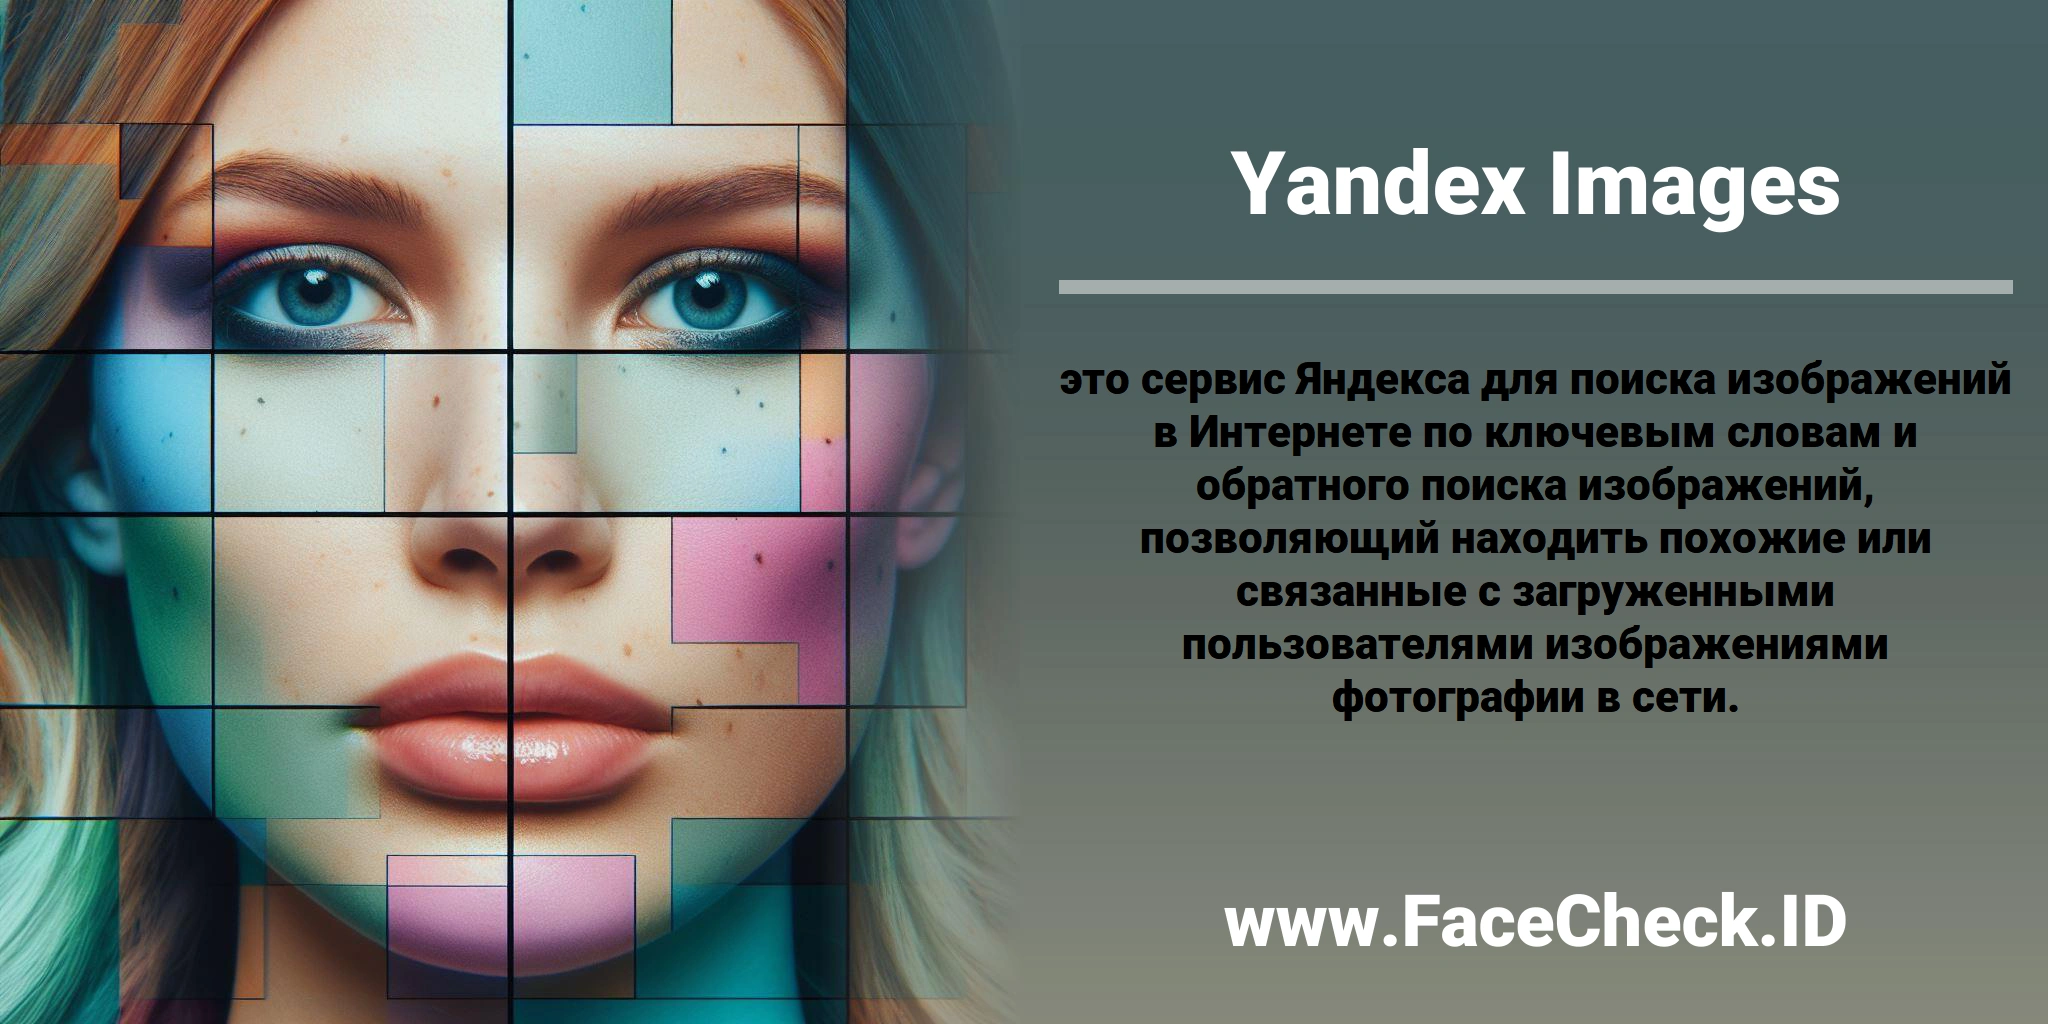 <b>Yandex Images</b> это сервис Яндекса для поиска изображений в Интернете по ключевым словам и обратного поиска изображений, позволяющий находить похожие или связанные с загруженными пользователями изображениями фотографии в сети.